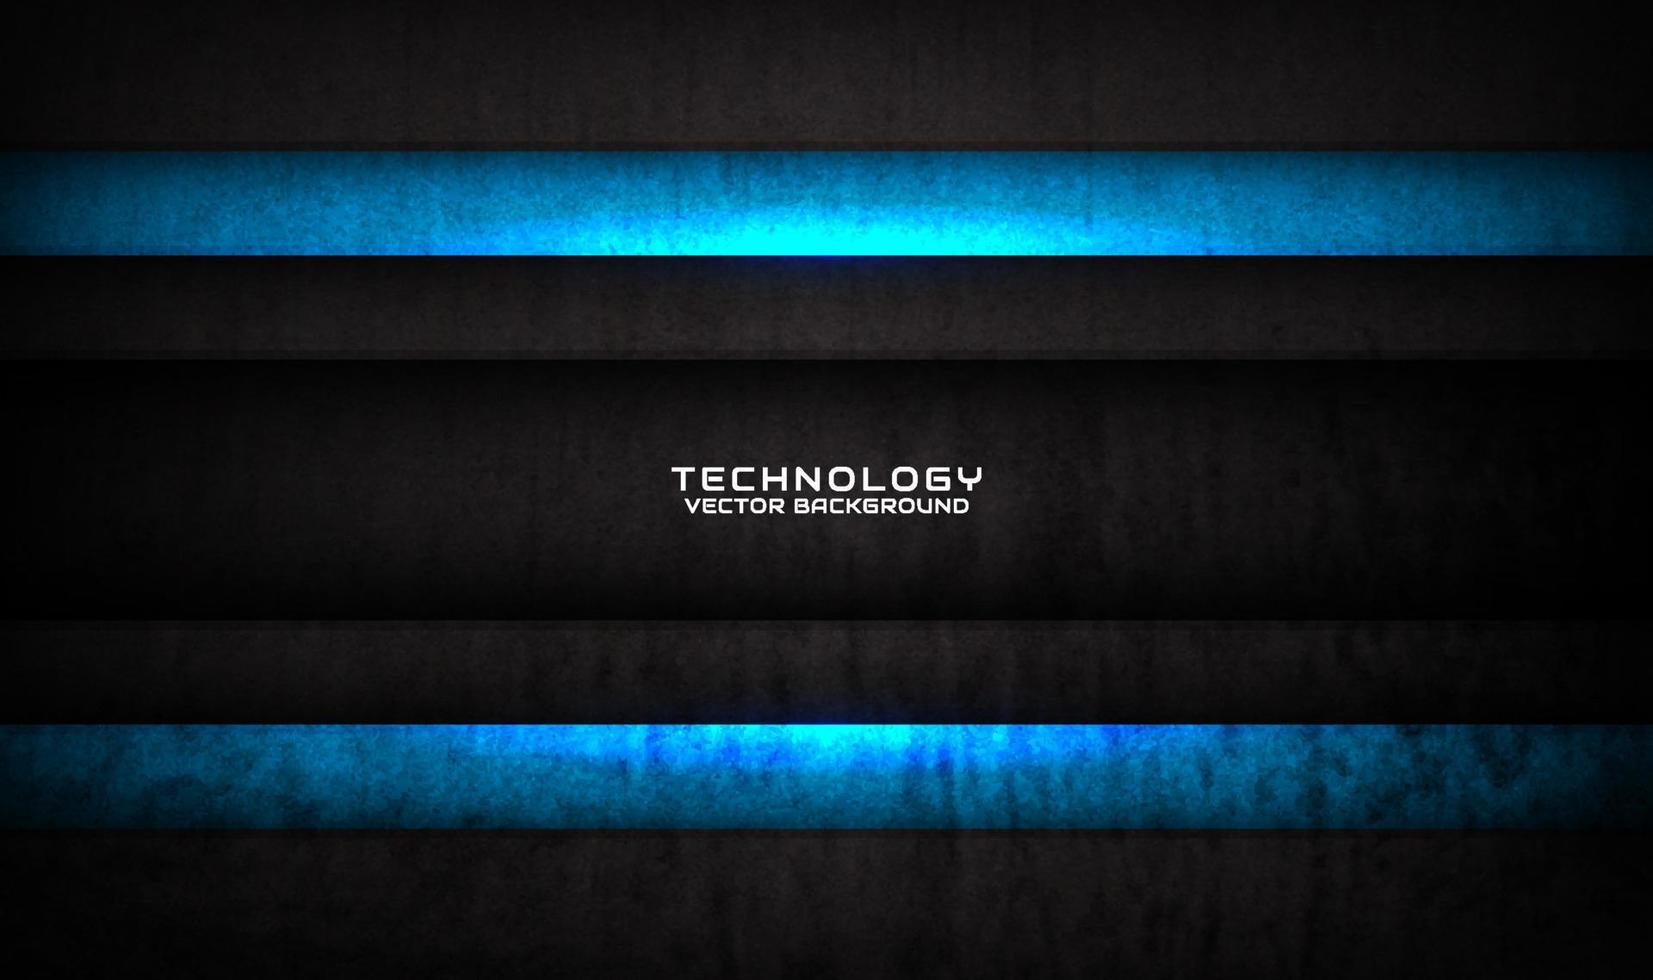 3d preto azul tecnologia abstrata camada de sobreposição no espaço escuro com decoração de efeito de textura grunge. conceito de estilo futuro de elemento de design gráfico para banner, panfleto, capa ou página de destino vetor